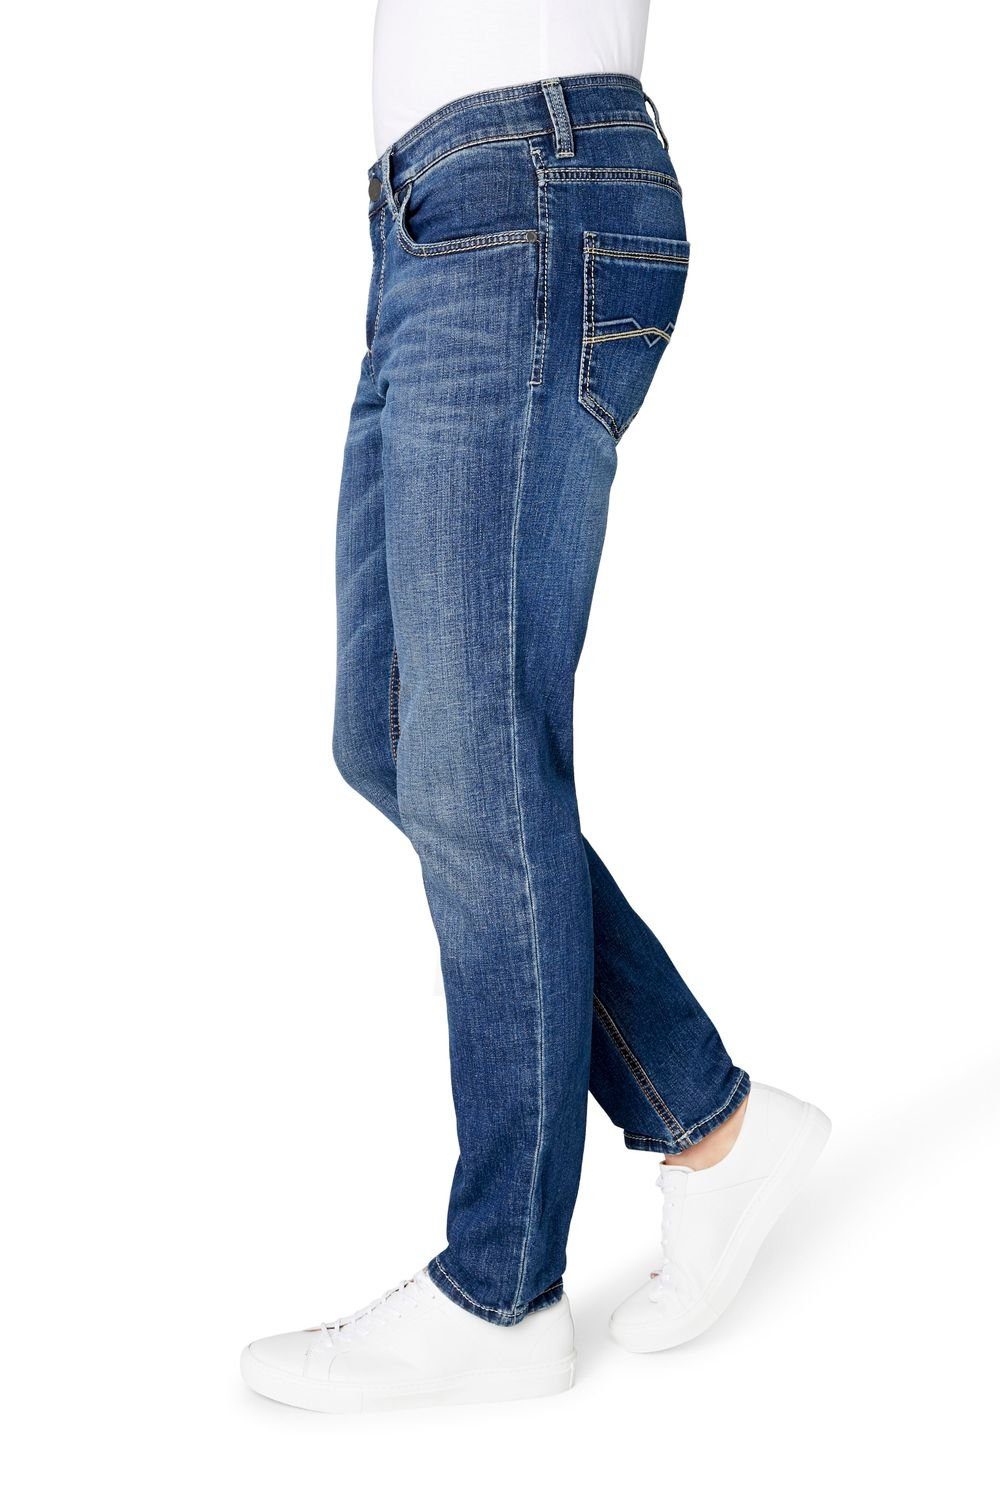 Herren Jeans Atelier GARDEUR Regular-fit-Jeans Herren Jeans Hose BATU-2 71001 067 *